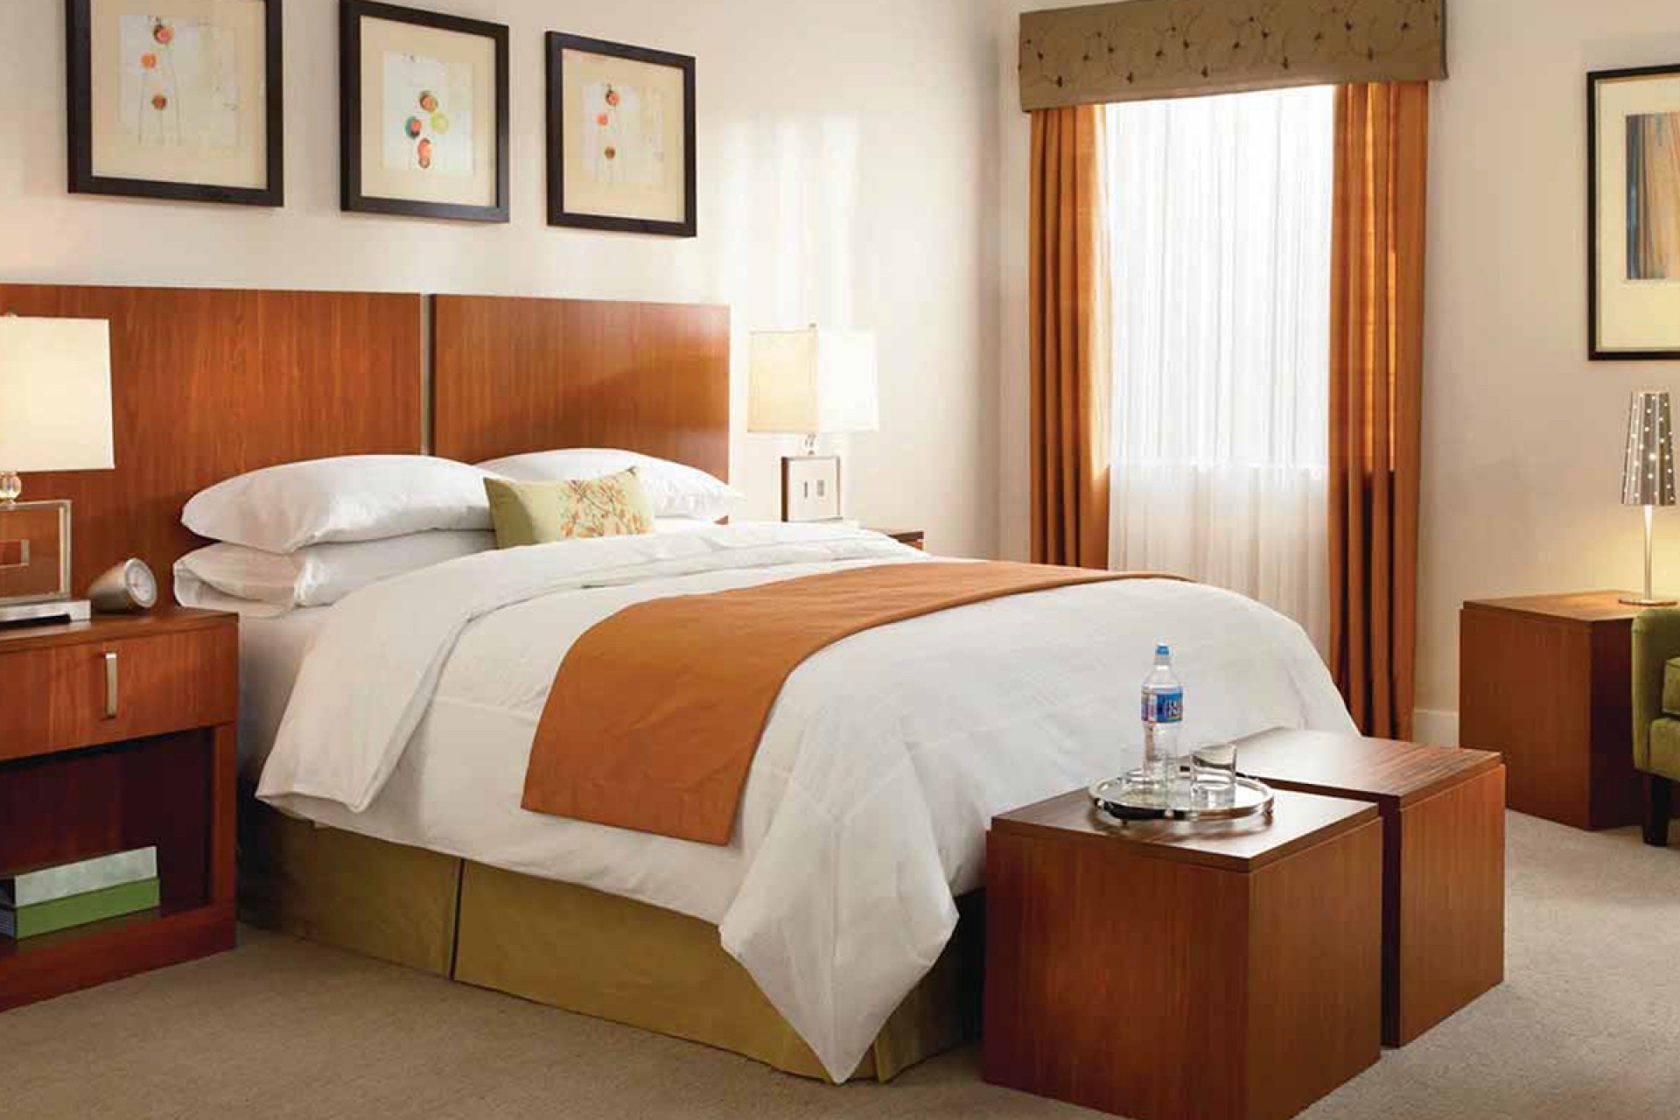 Кровати для гостиниц и отелей Люкс класса